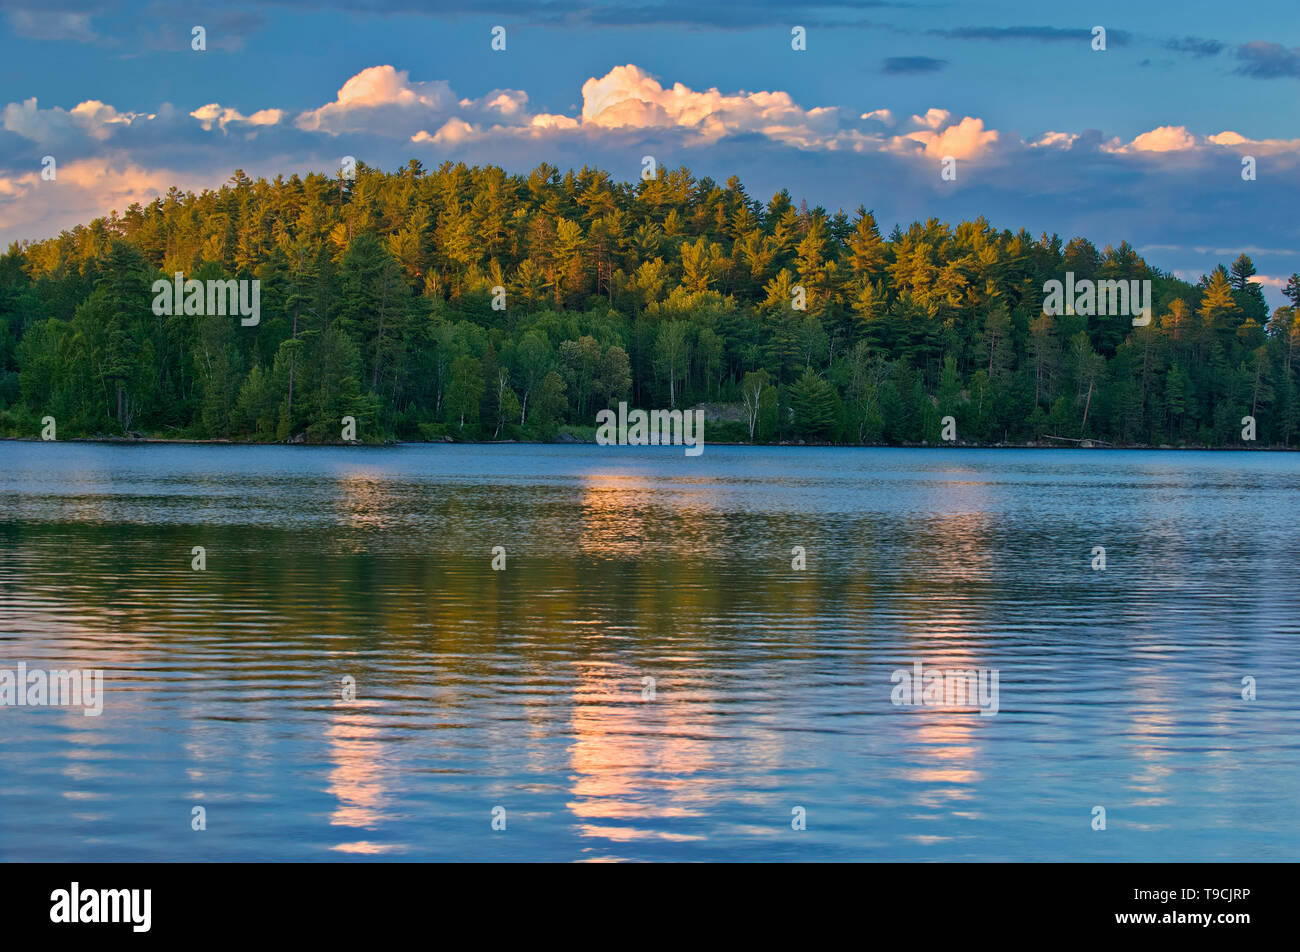 Les nuages reflètent dans l'île Snake Lake au coucher du soleil. L'ours blanc Réserve de conservation des forêts de l'Ontario Canada Temagami Banque D'Images